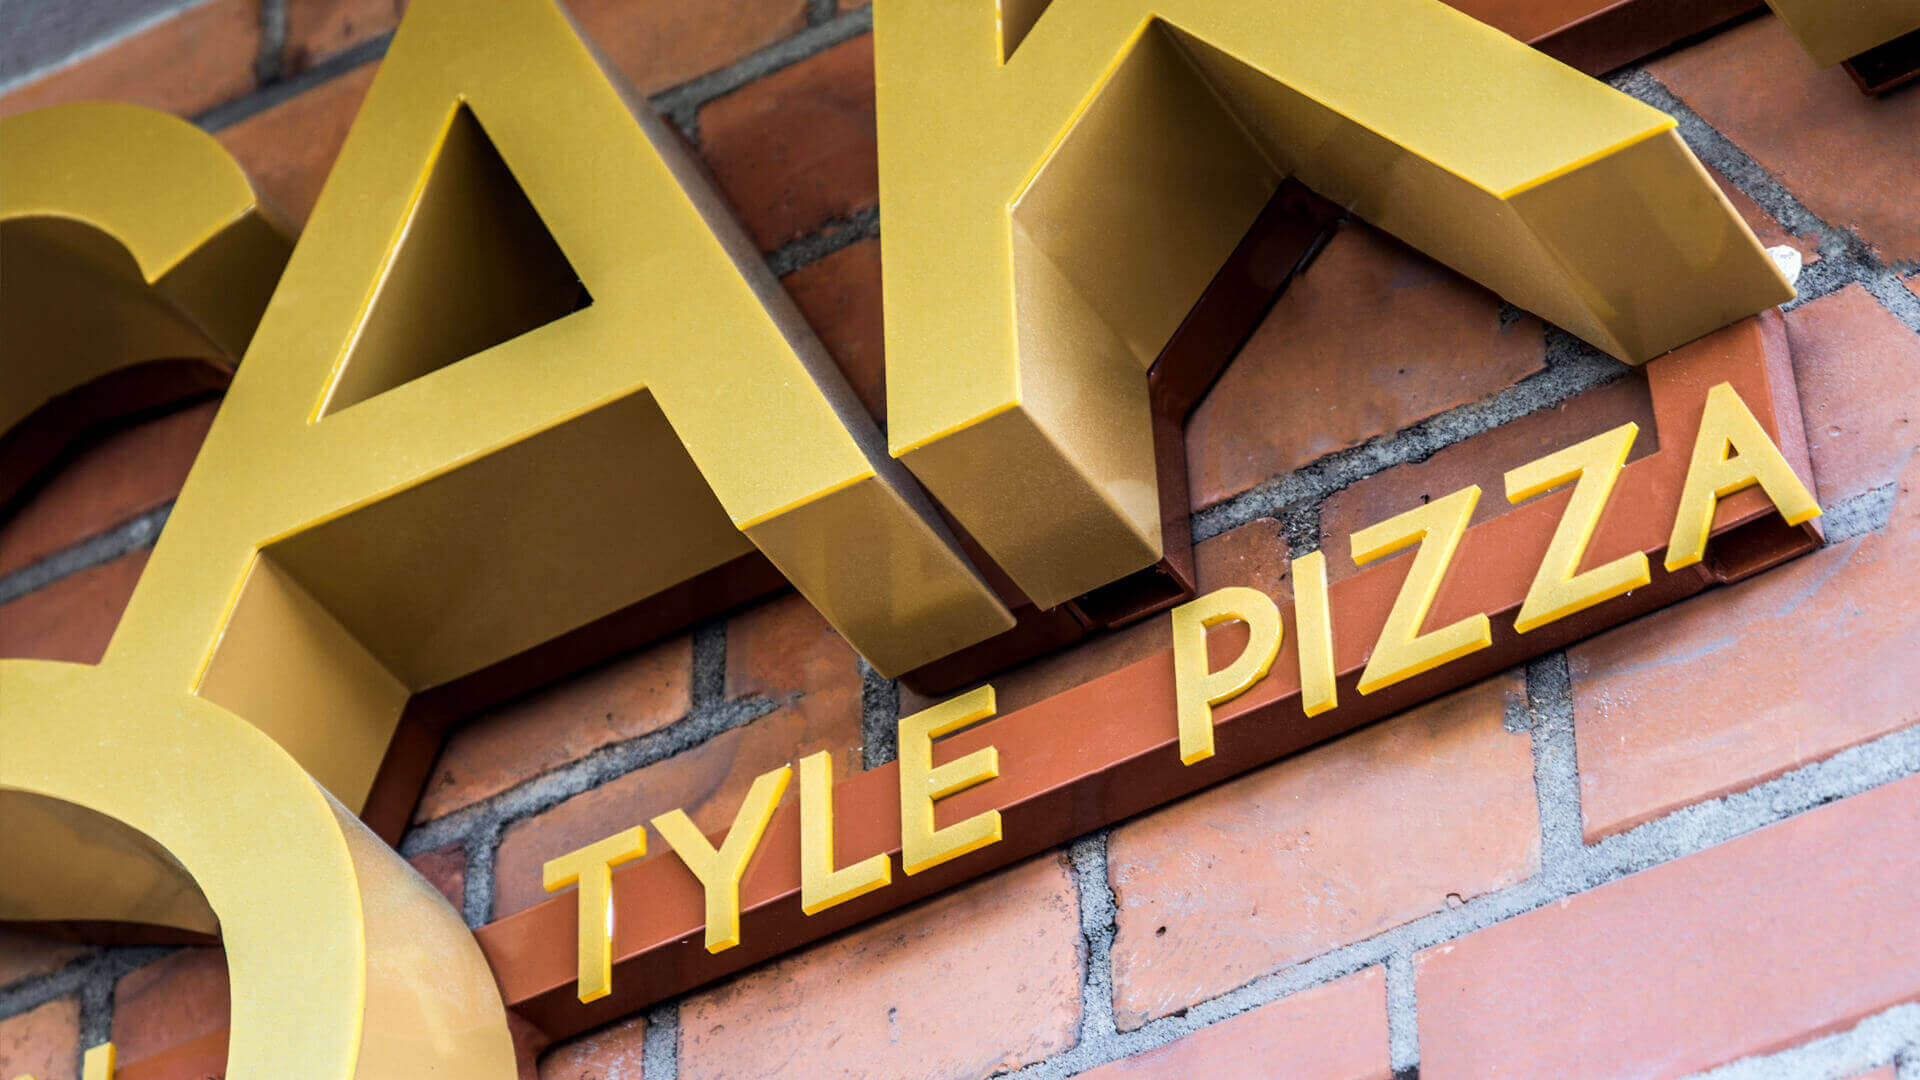 pizzería husak - hussak-pizzeria-zlote-literatura-espacial-sub-lit-type letras-en-la-pared-con-un-ladrillo-sobre-la-entrada-sobre-la-superficie-montada-en-la-pared-grunwaldzka-gdansk (14)